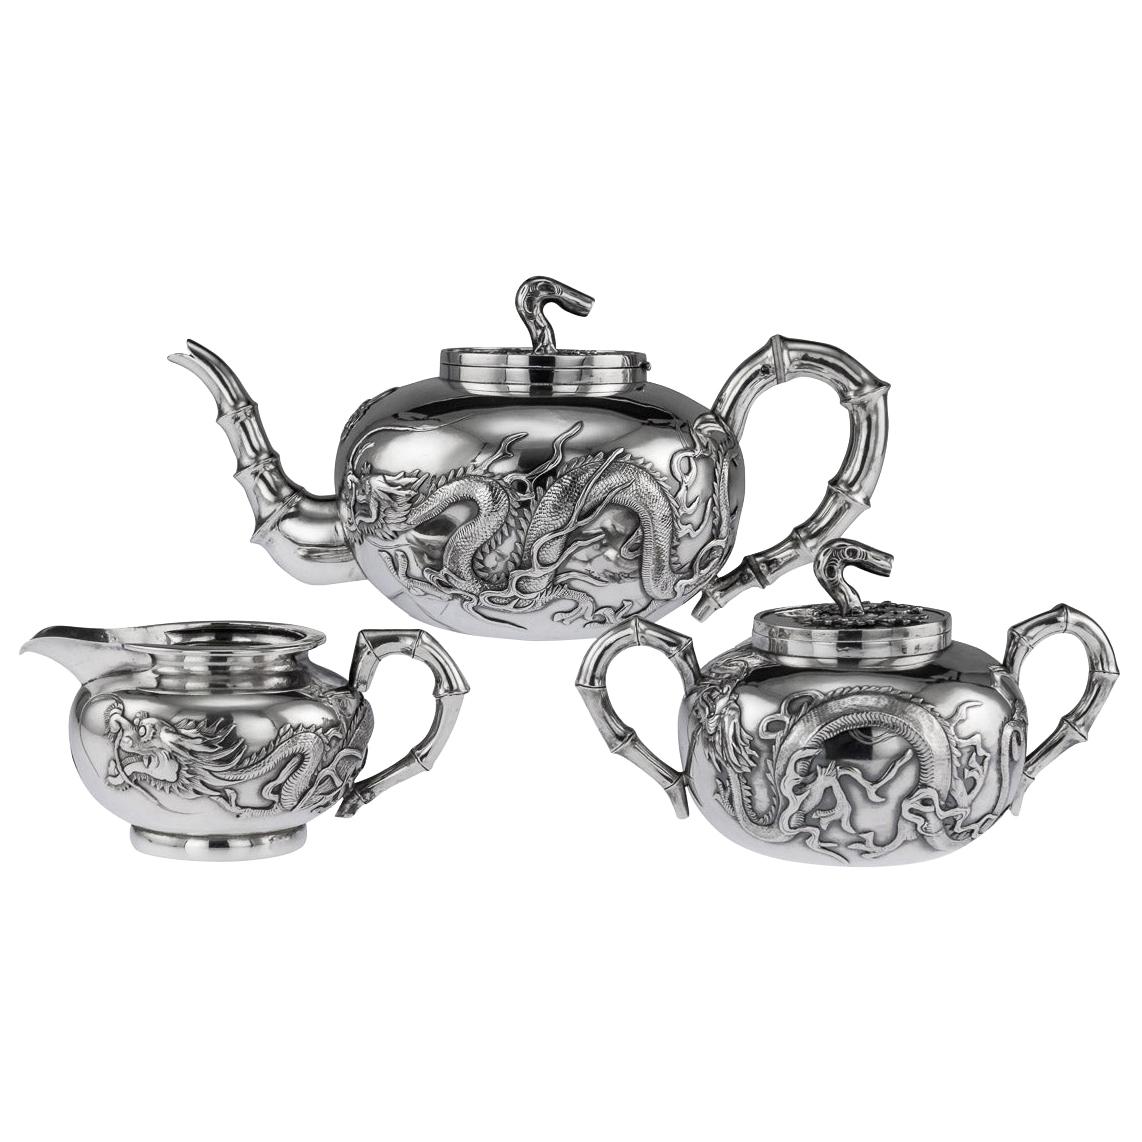 19th Century Chinese Export Silver Dragon Tea Set by Wang Hing, circa 1890